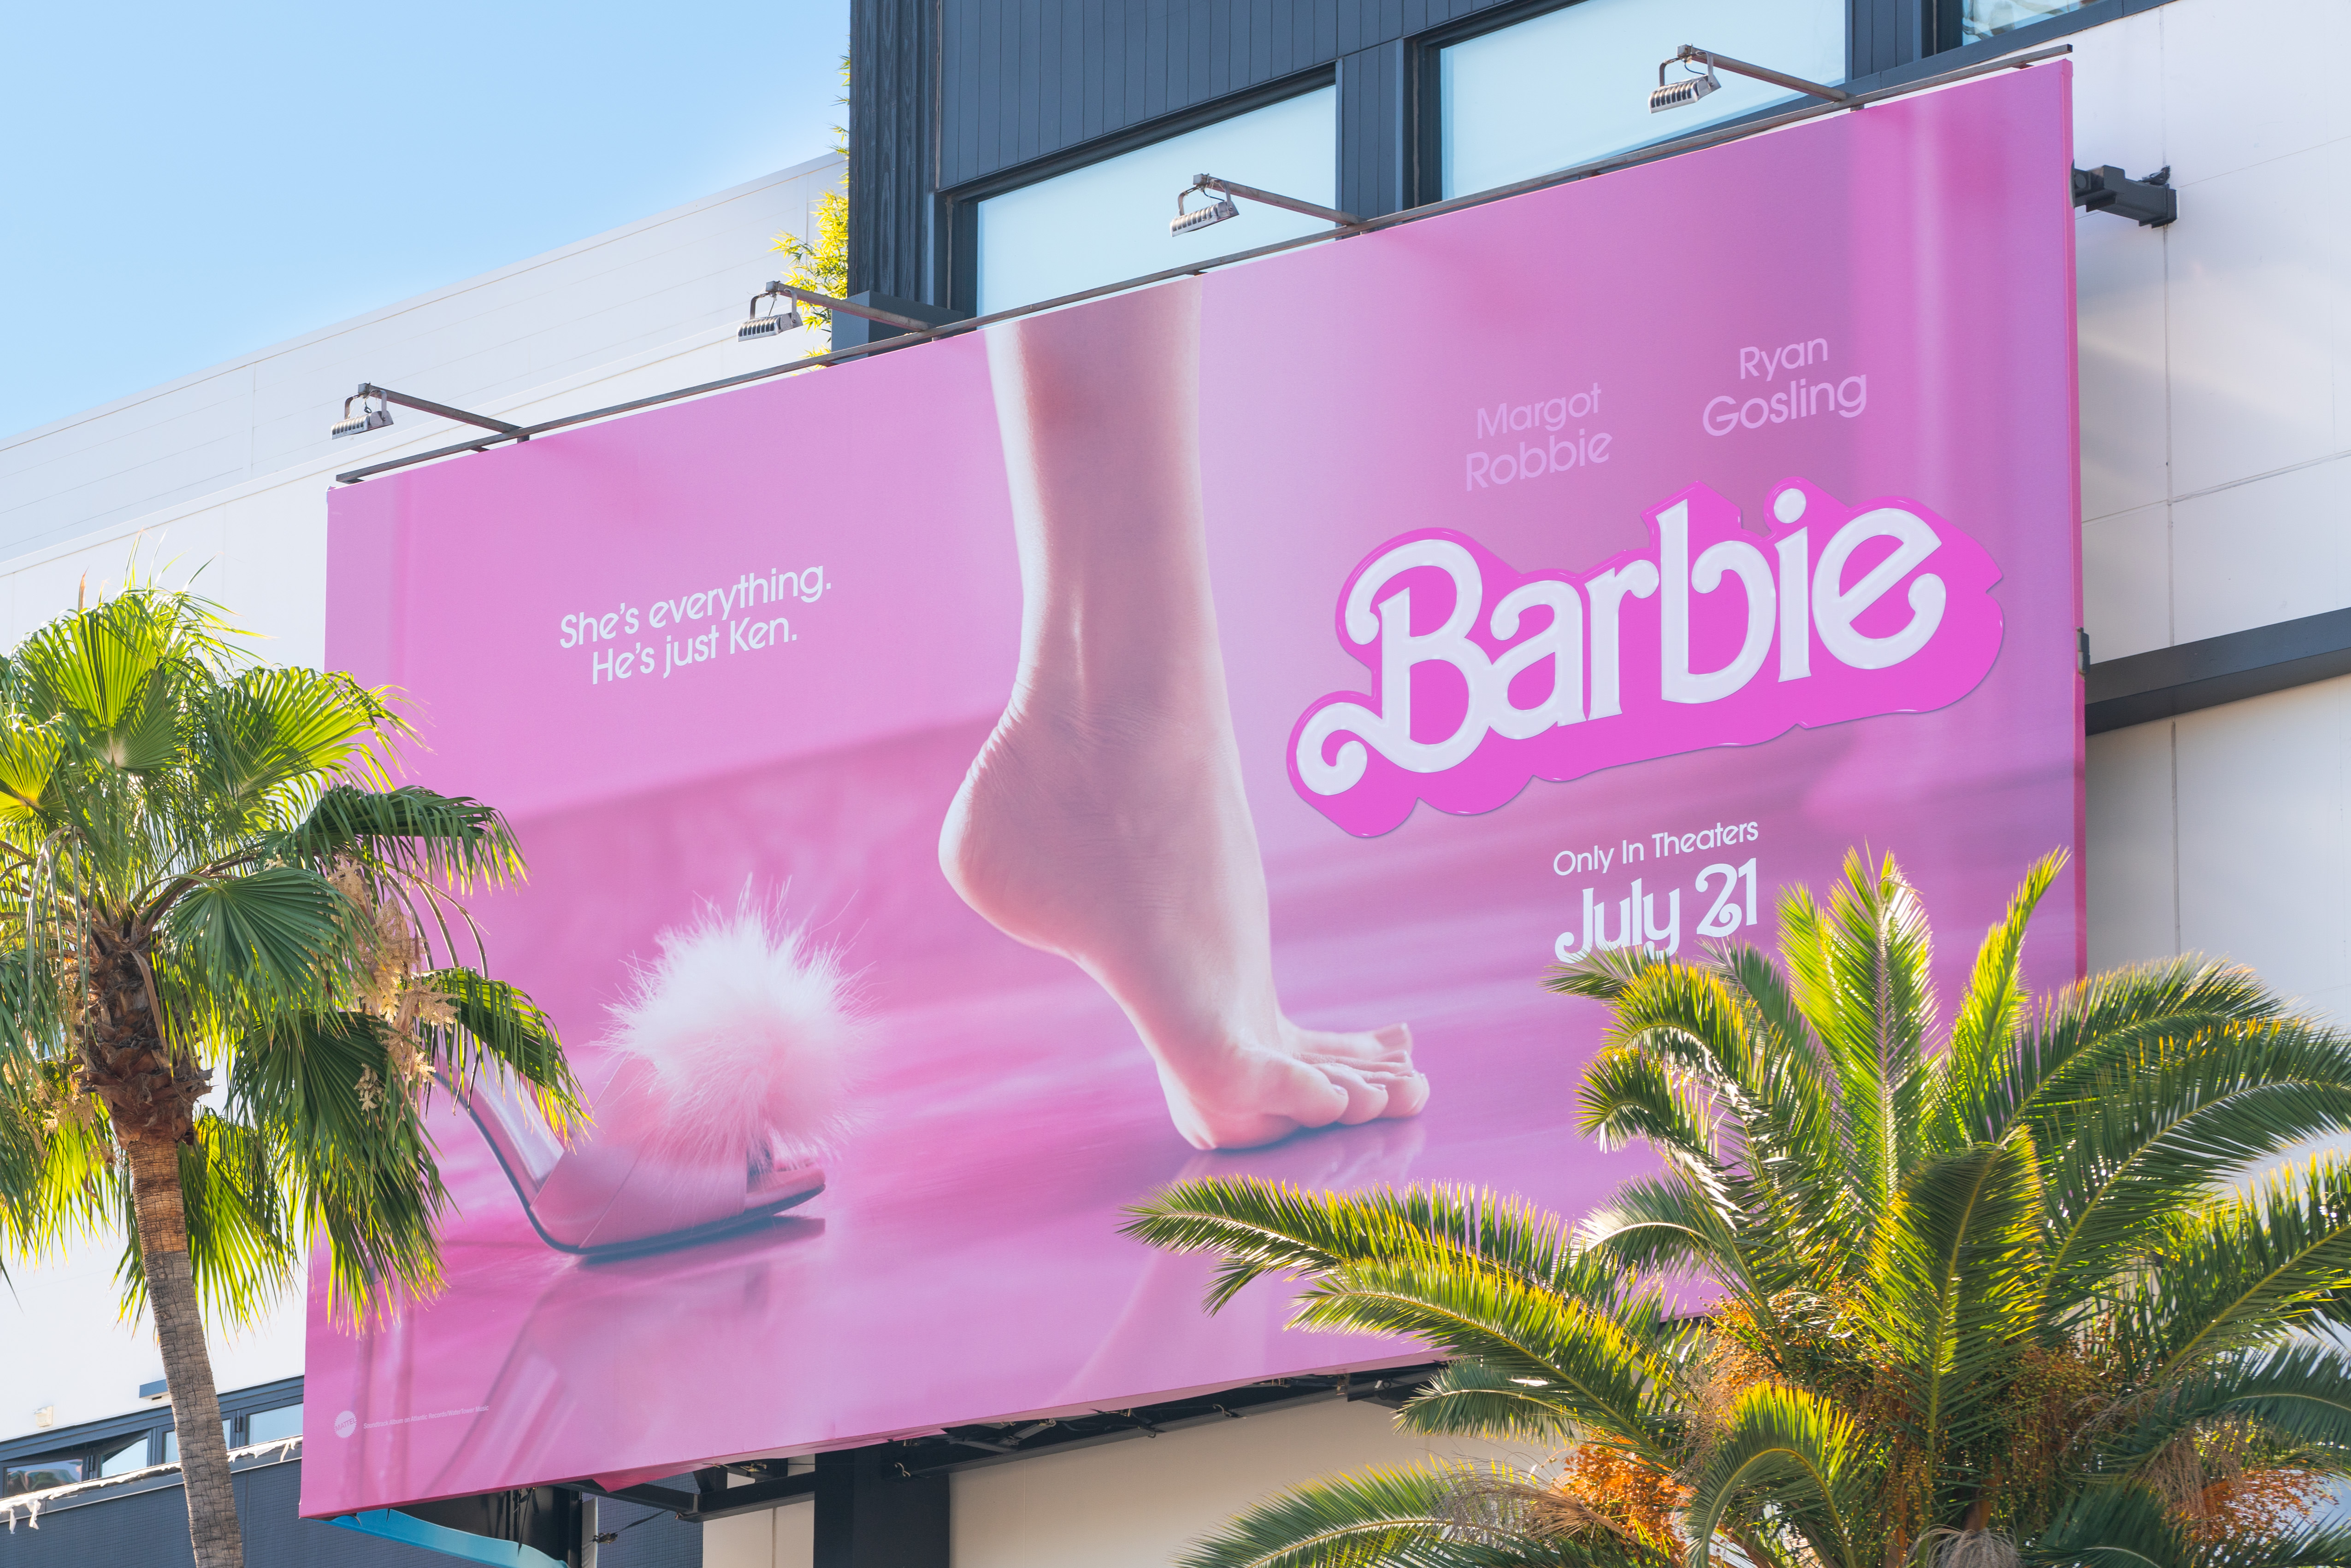 Lateinamerika empfängt Barbie mit rosa Tacos, Parodien und Protesten